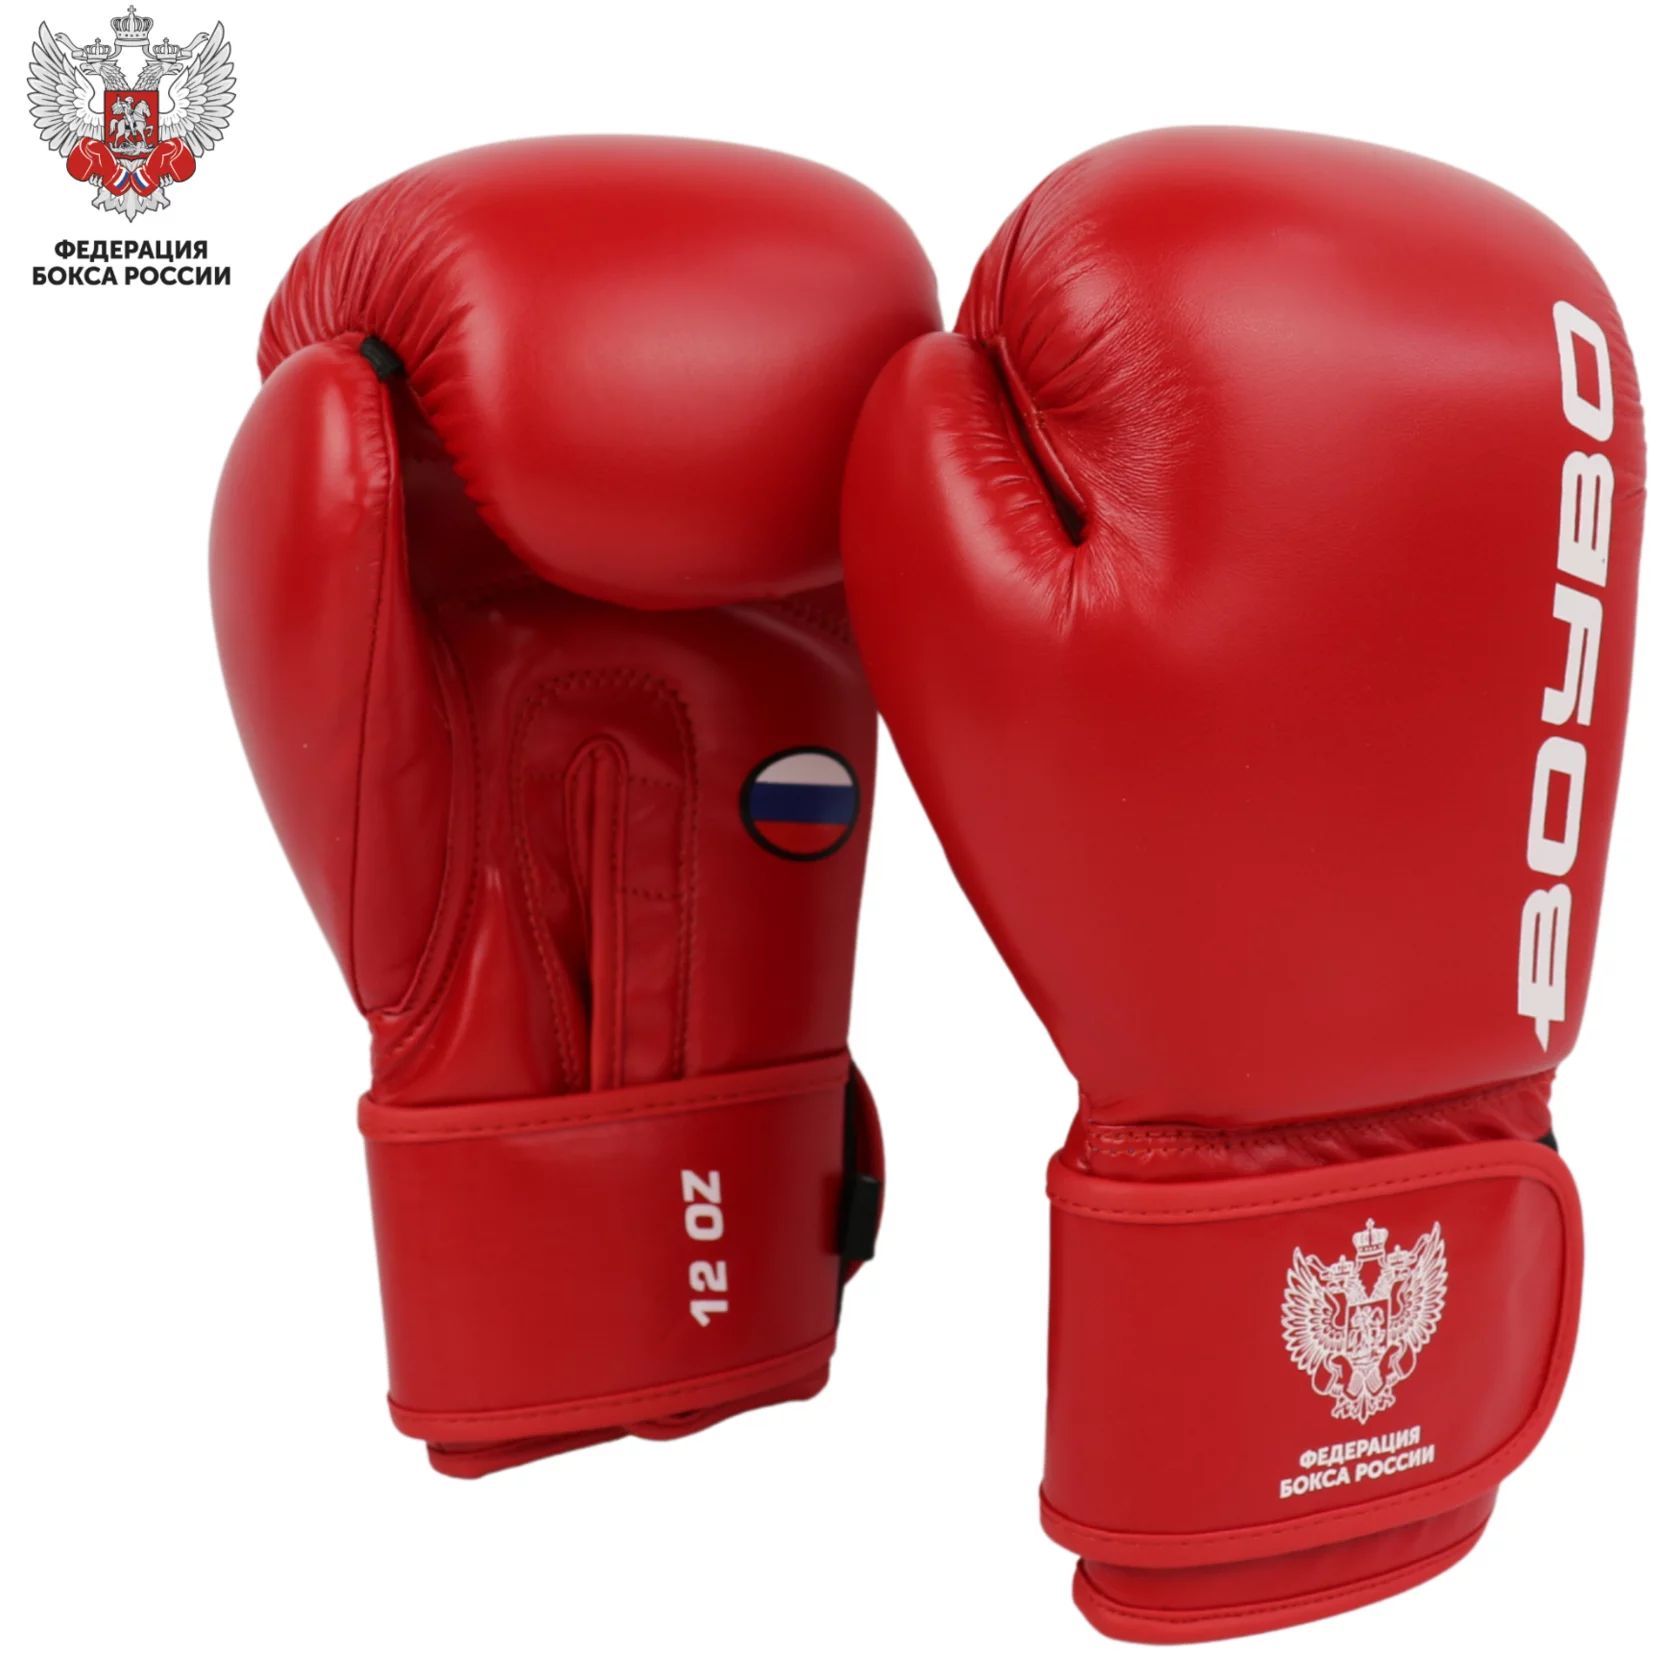 Перчатки боксерские BoyBo TITAN, IB-23-1, кожа одобрены ФБР,красные 12 oz